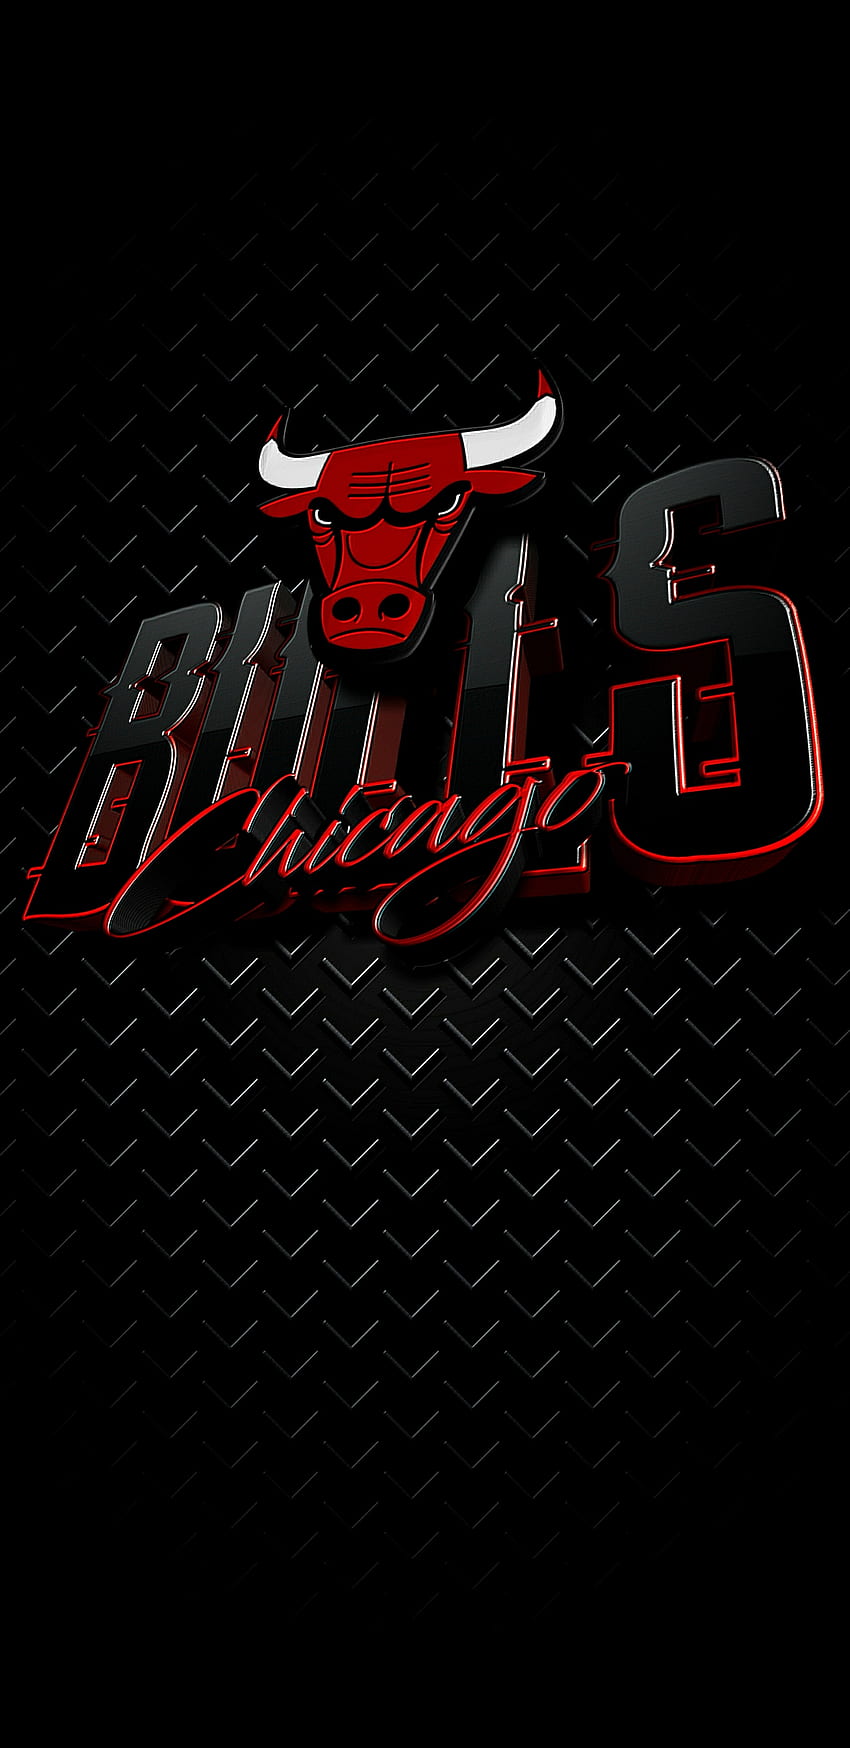 Chicago Bulls iPhone Wallpapers  PixelsTalkNet